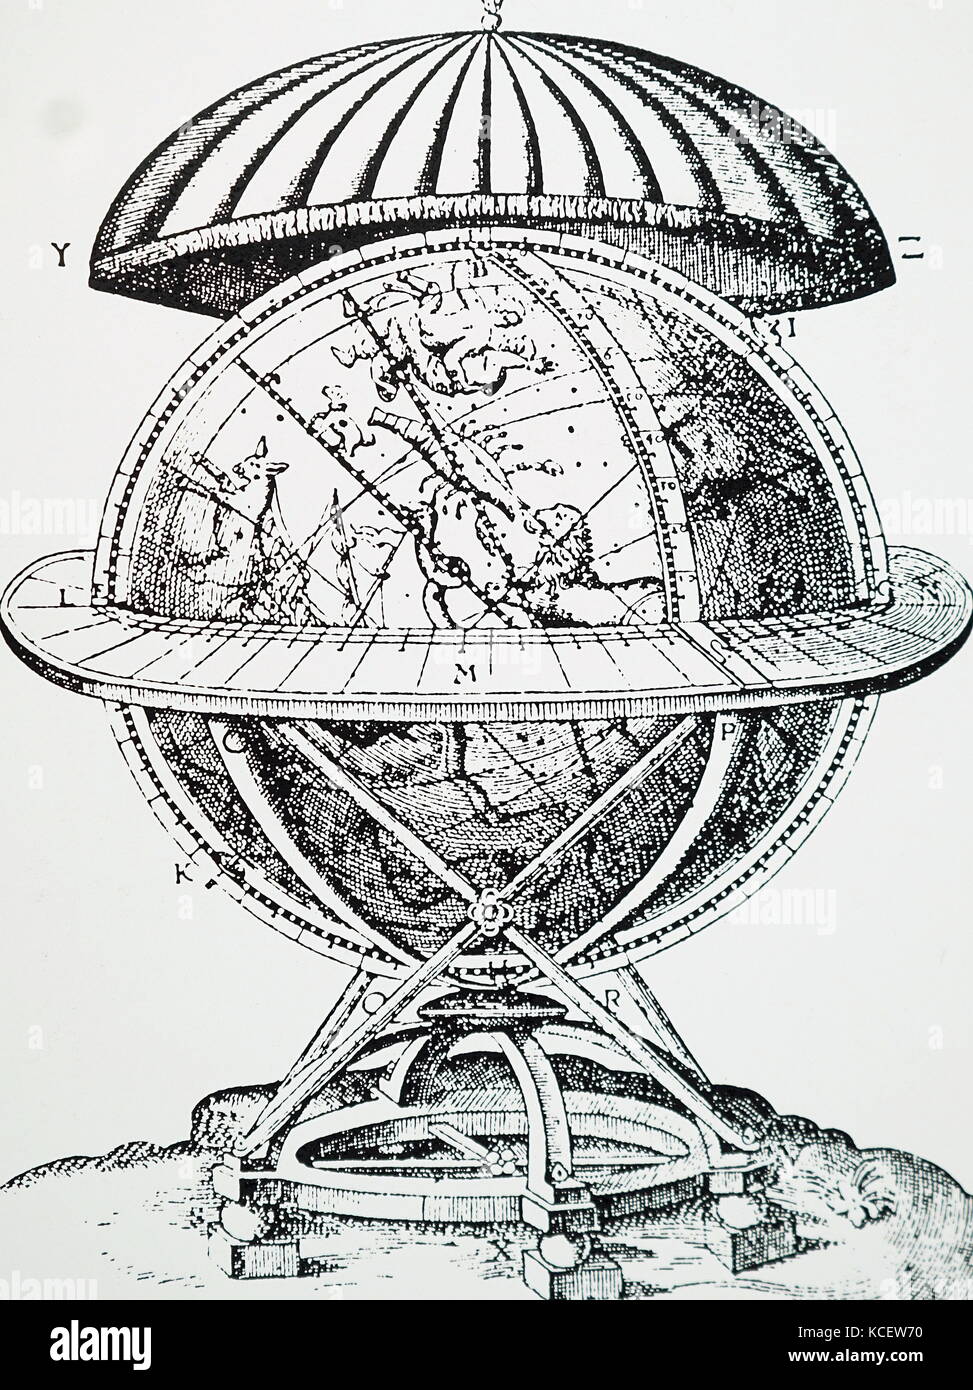 Gravur, himmlischen Tycho Brahes Globus, auf dem er gezeichnet die Positionen der Sterne beobachtete er. Tycho Brahe (1546-1601), dänischer Adeliger und Astronom. Vom 17. Jahrhundert Stockfoto